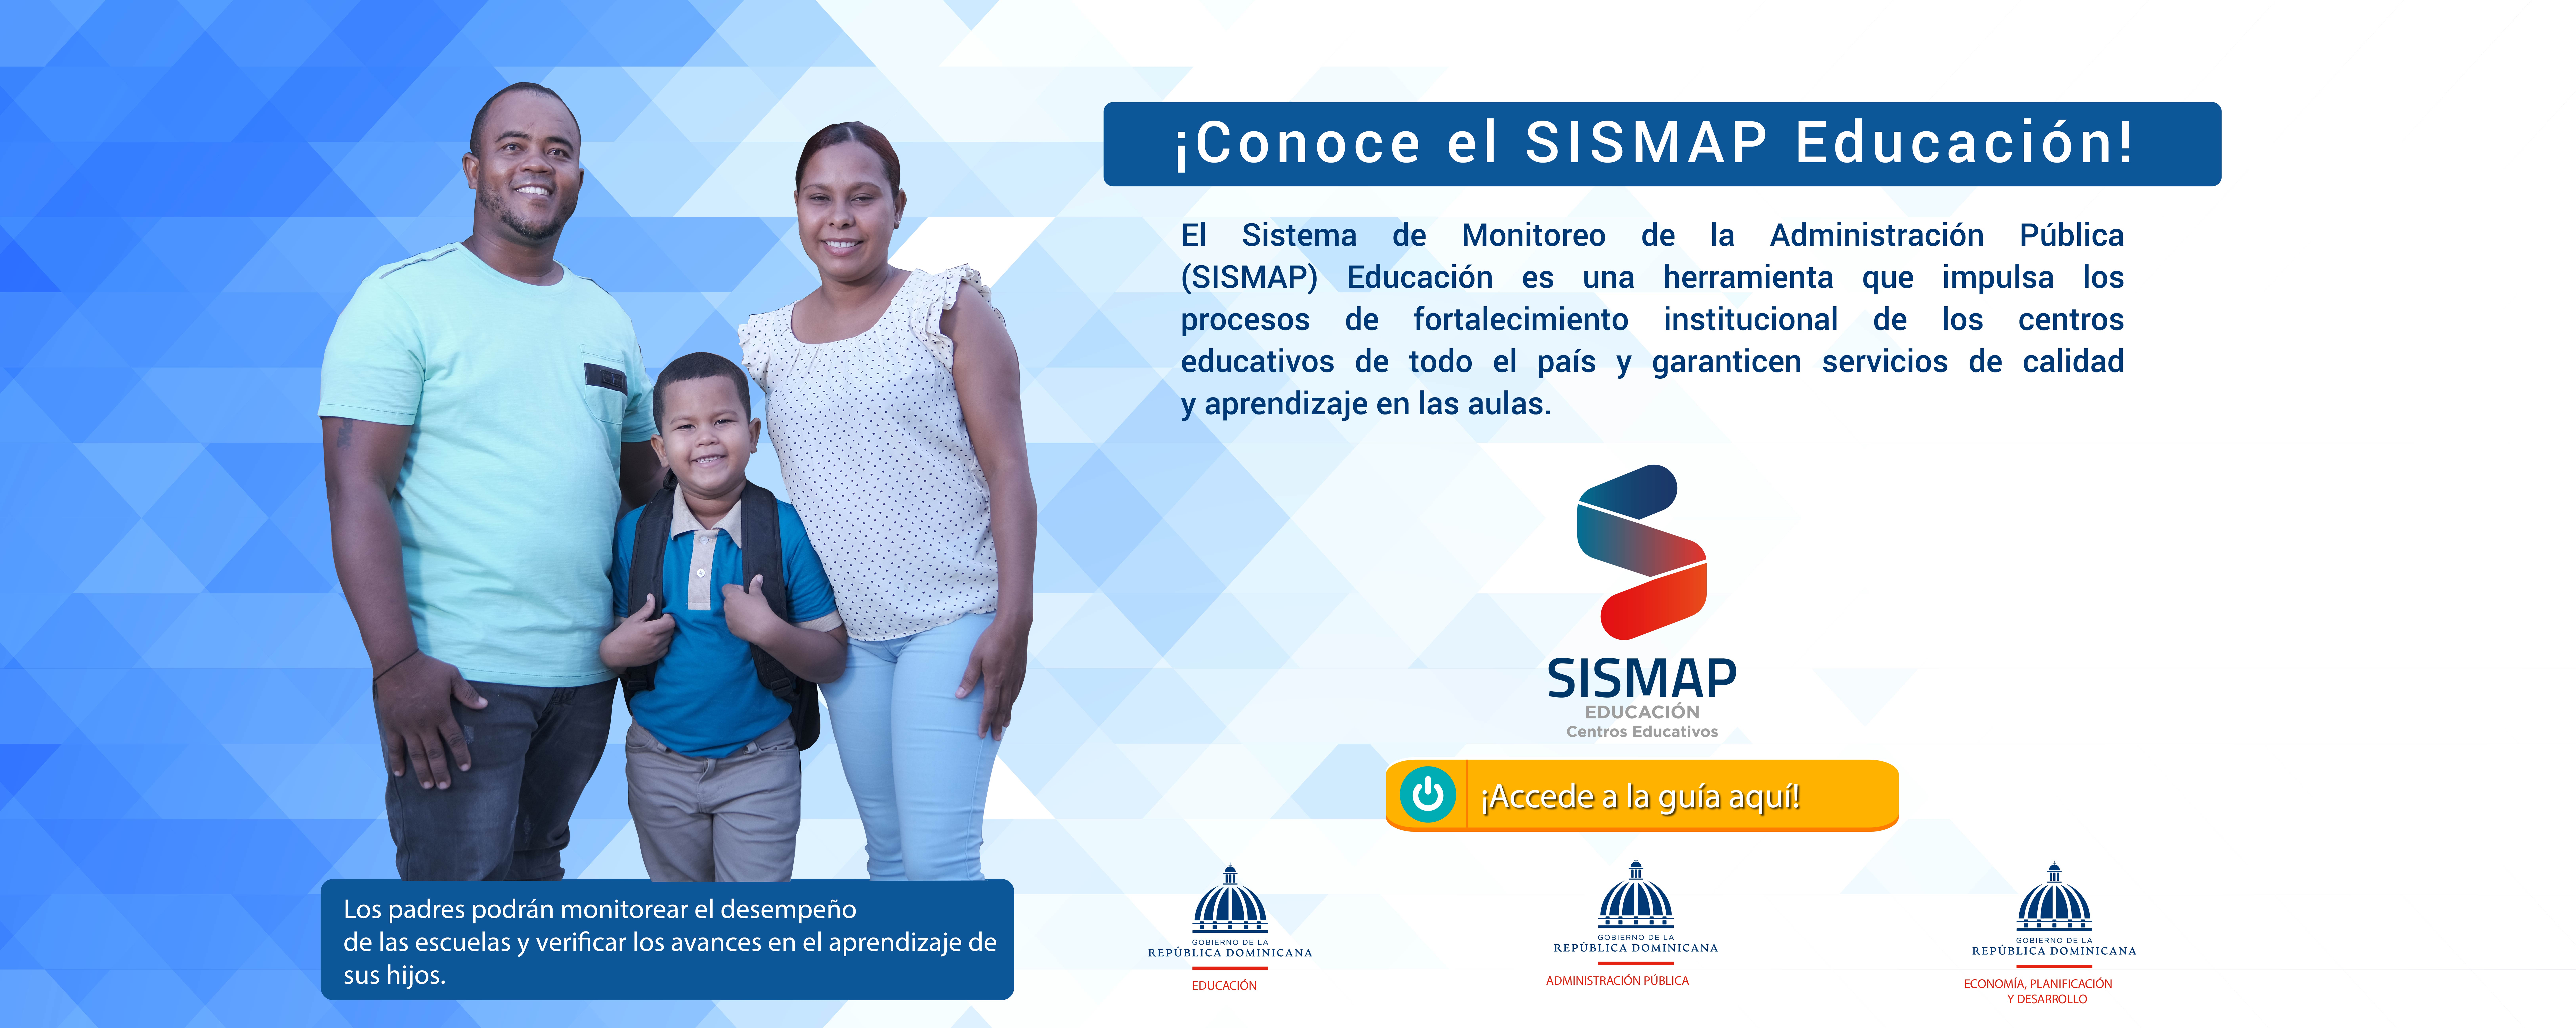 Conoce más sobre el SISMAP Educación